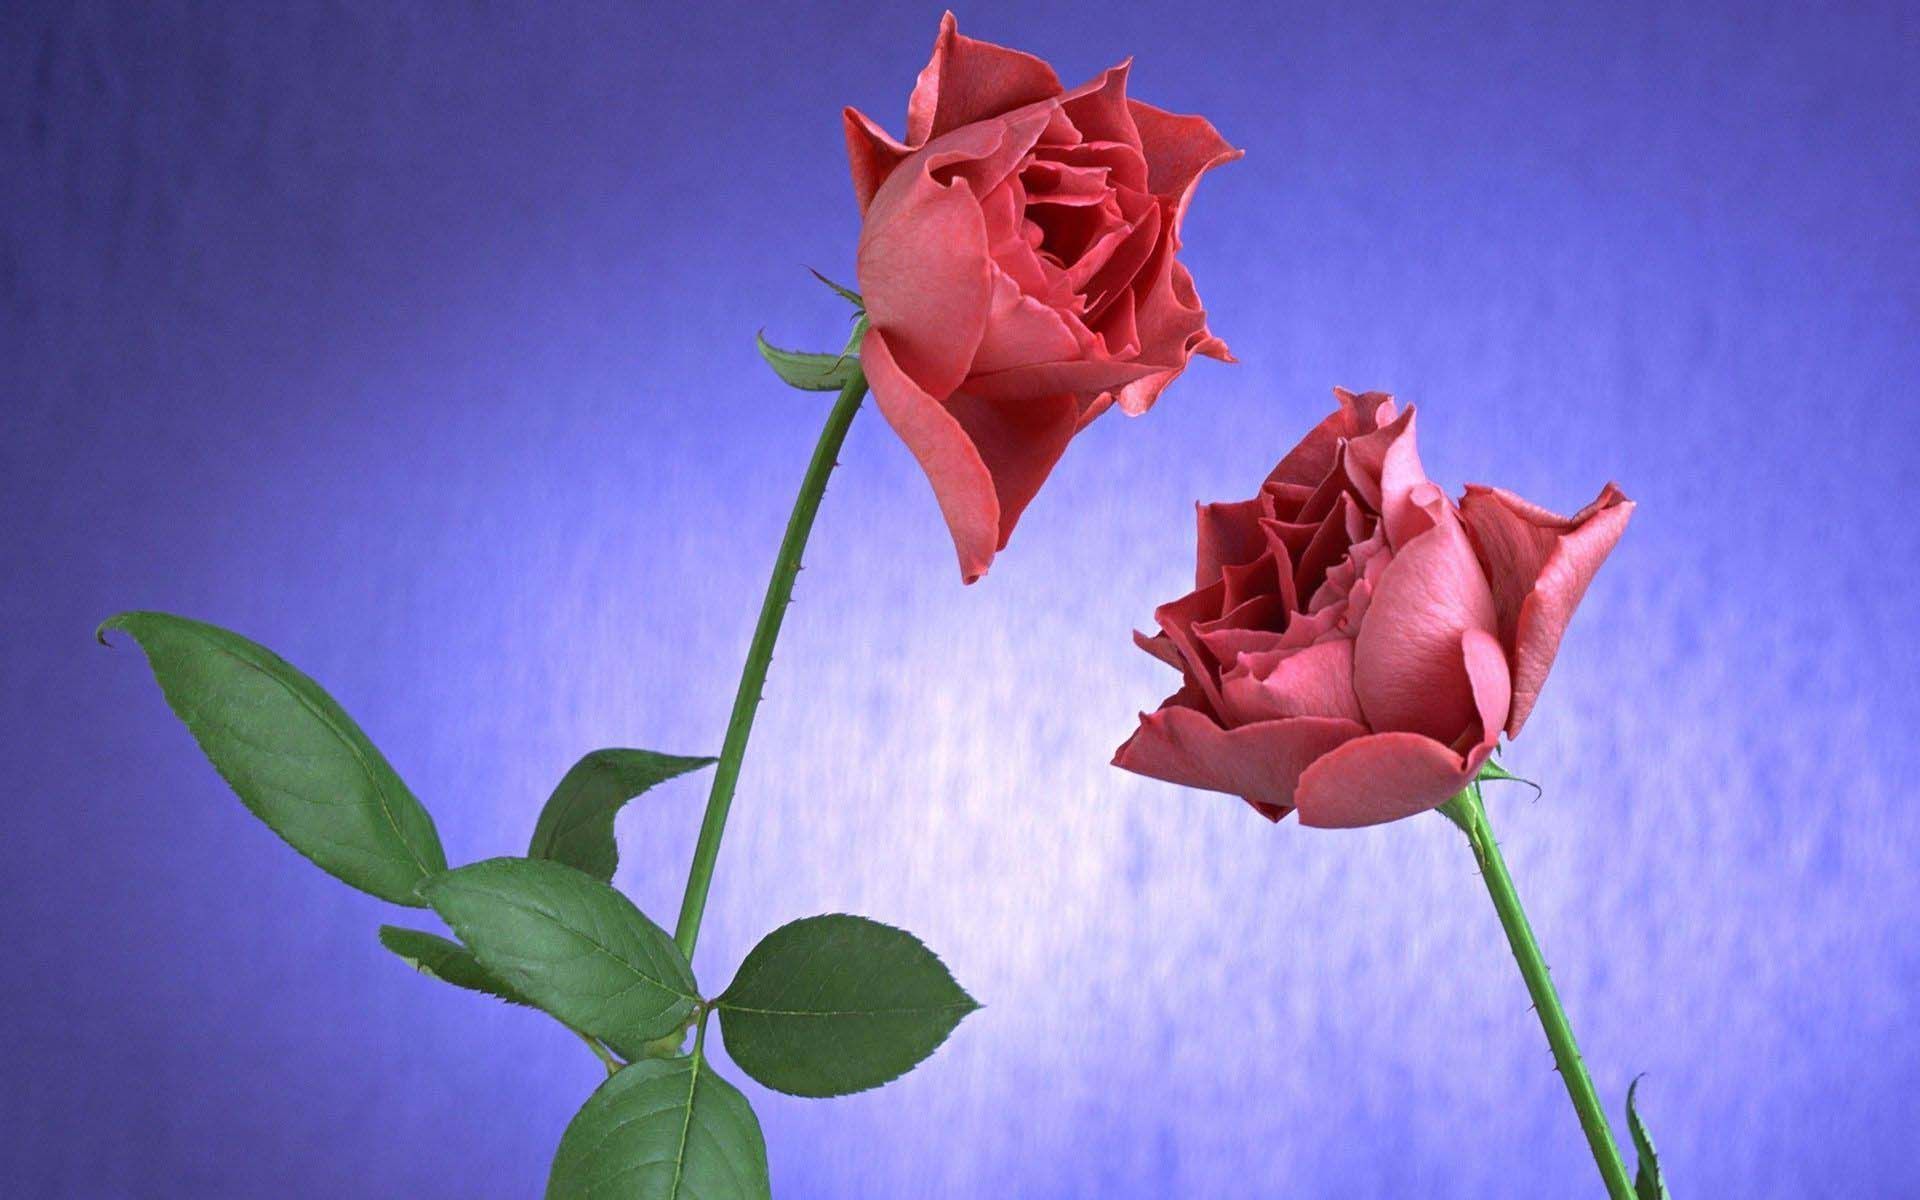 Rose 068 Wallpaper - 2 Rose Images Hd - HD Wallpaper 